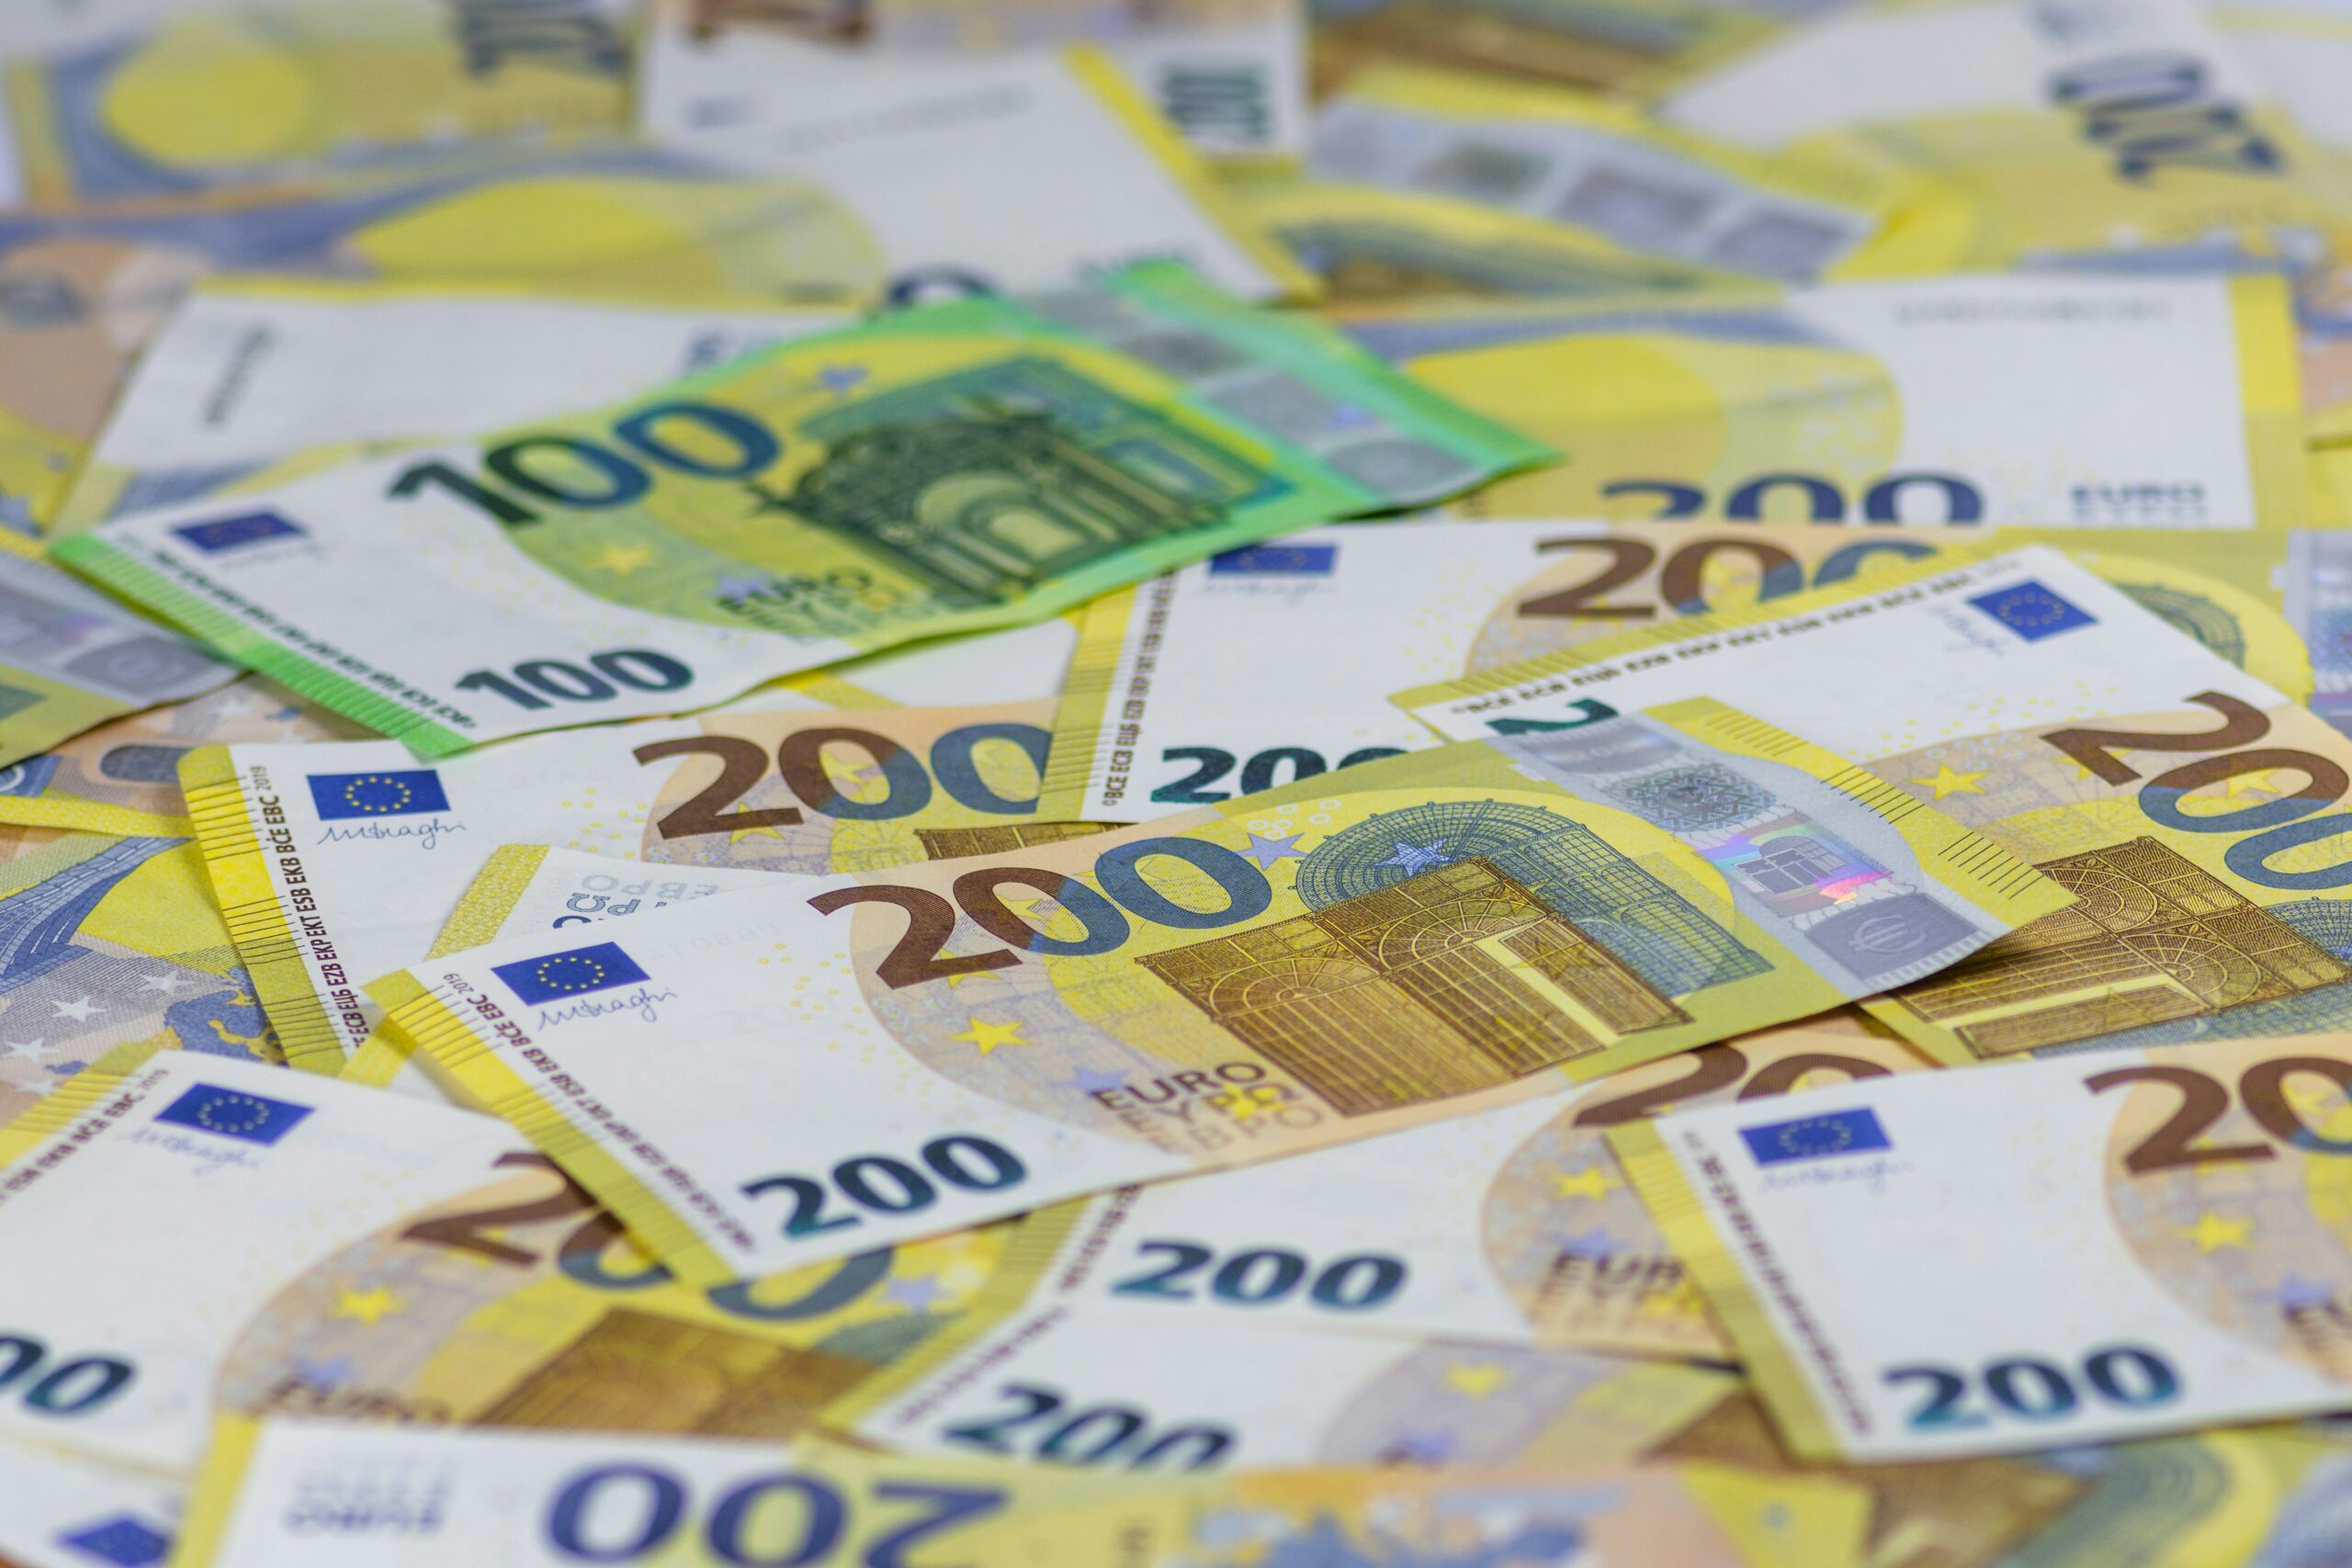 Přečtete si více ze článku Evropské fondy podle analýzy výrazně pomáhají slovenské ekonomice